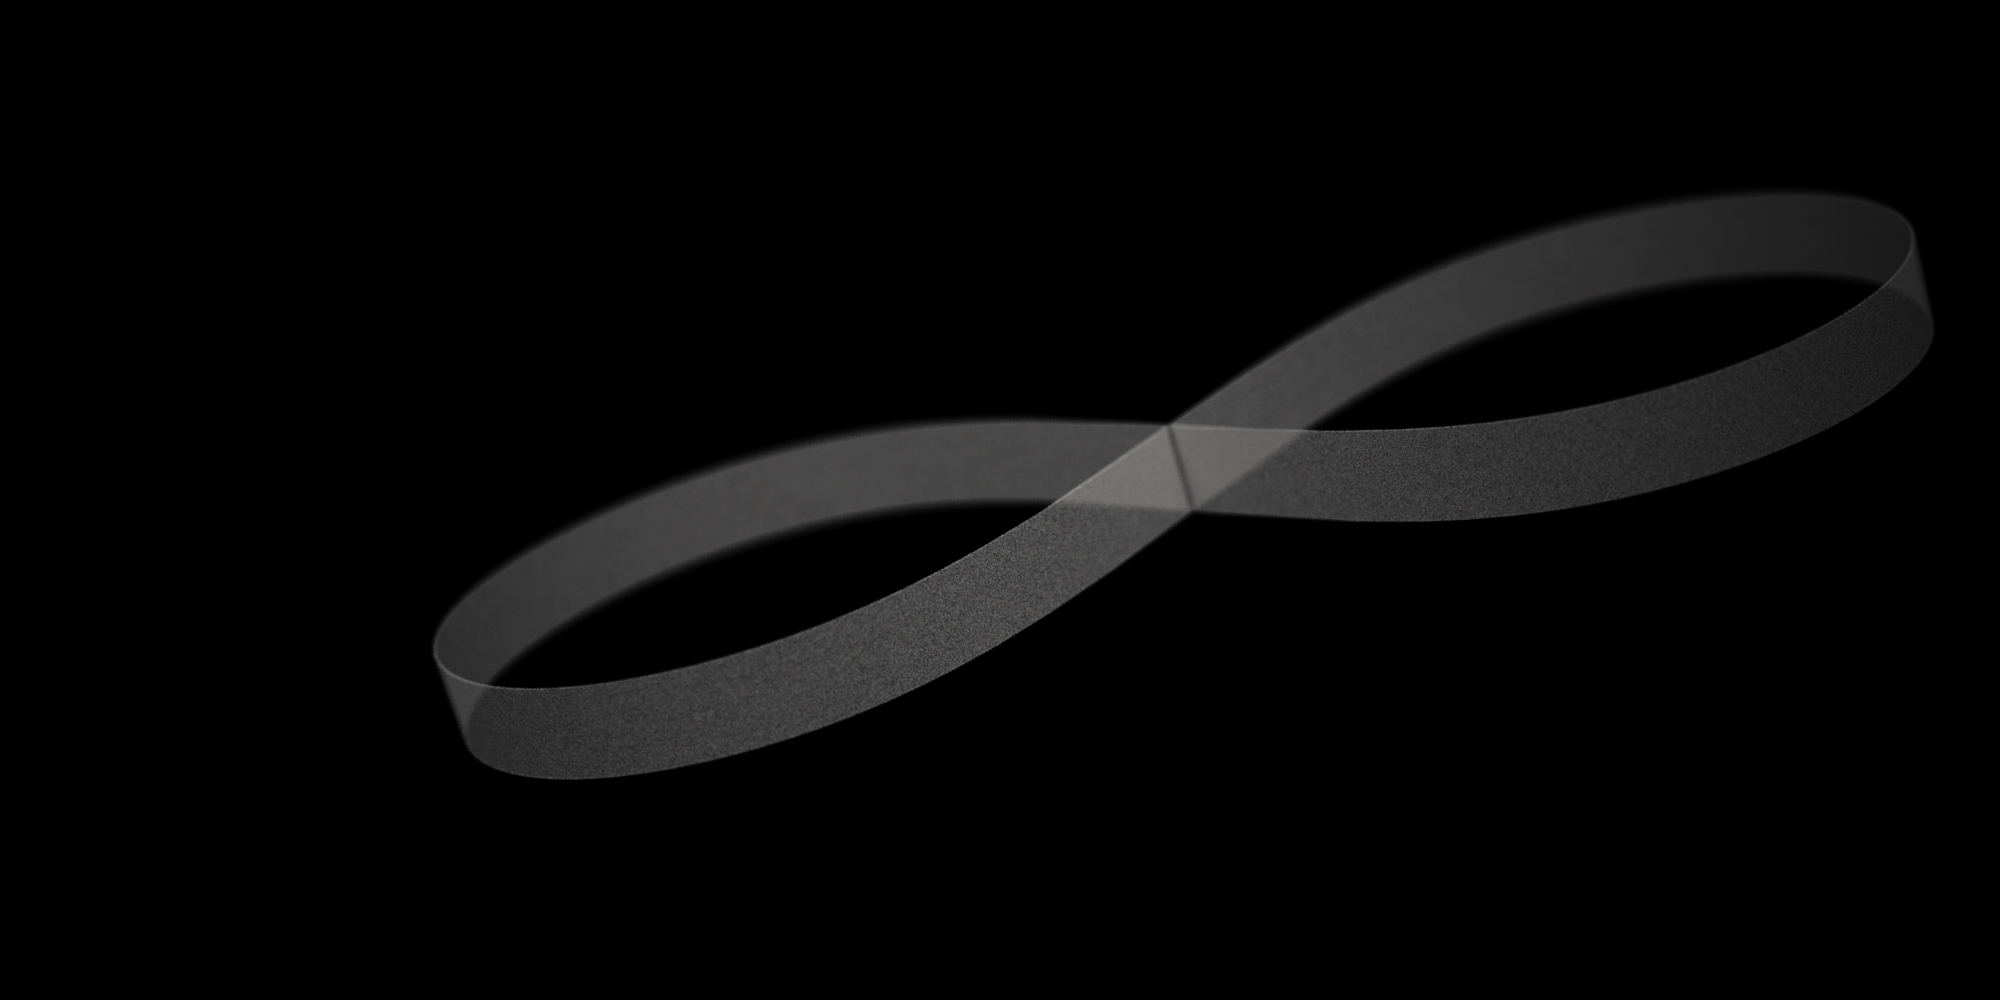 Ciclo infinito branco sobre um fundo preto, que representa o fluxo contínuo de dados numa organização transformada digitalmente